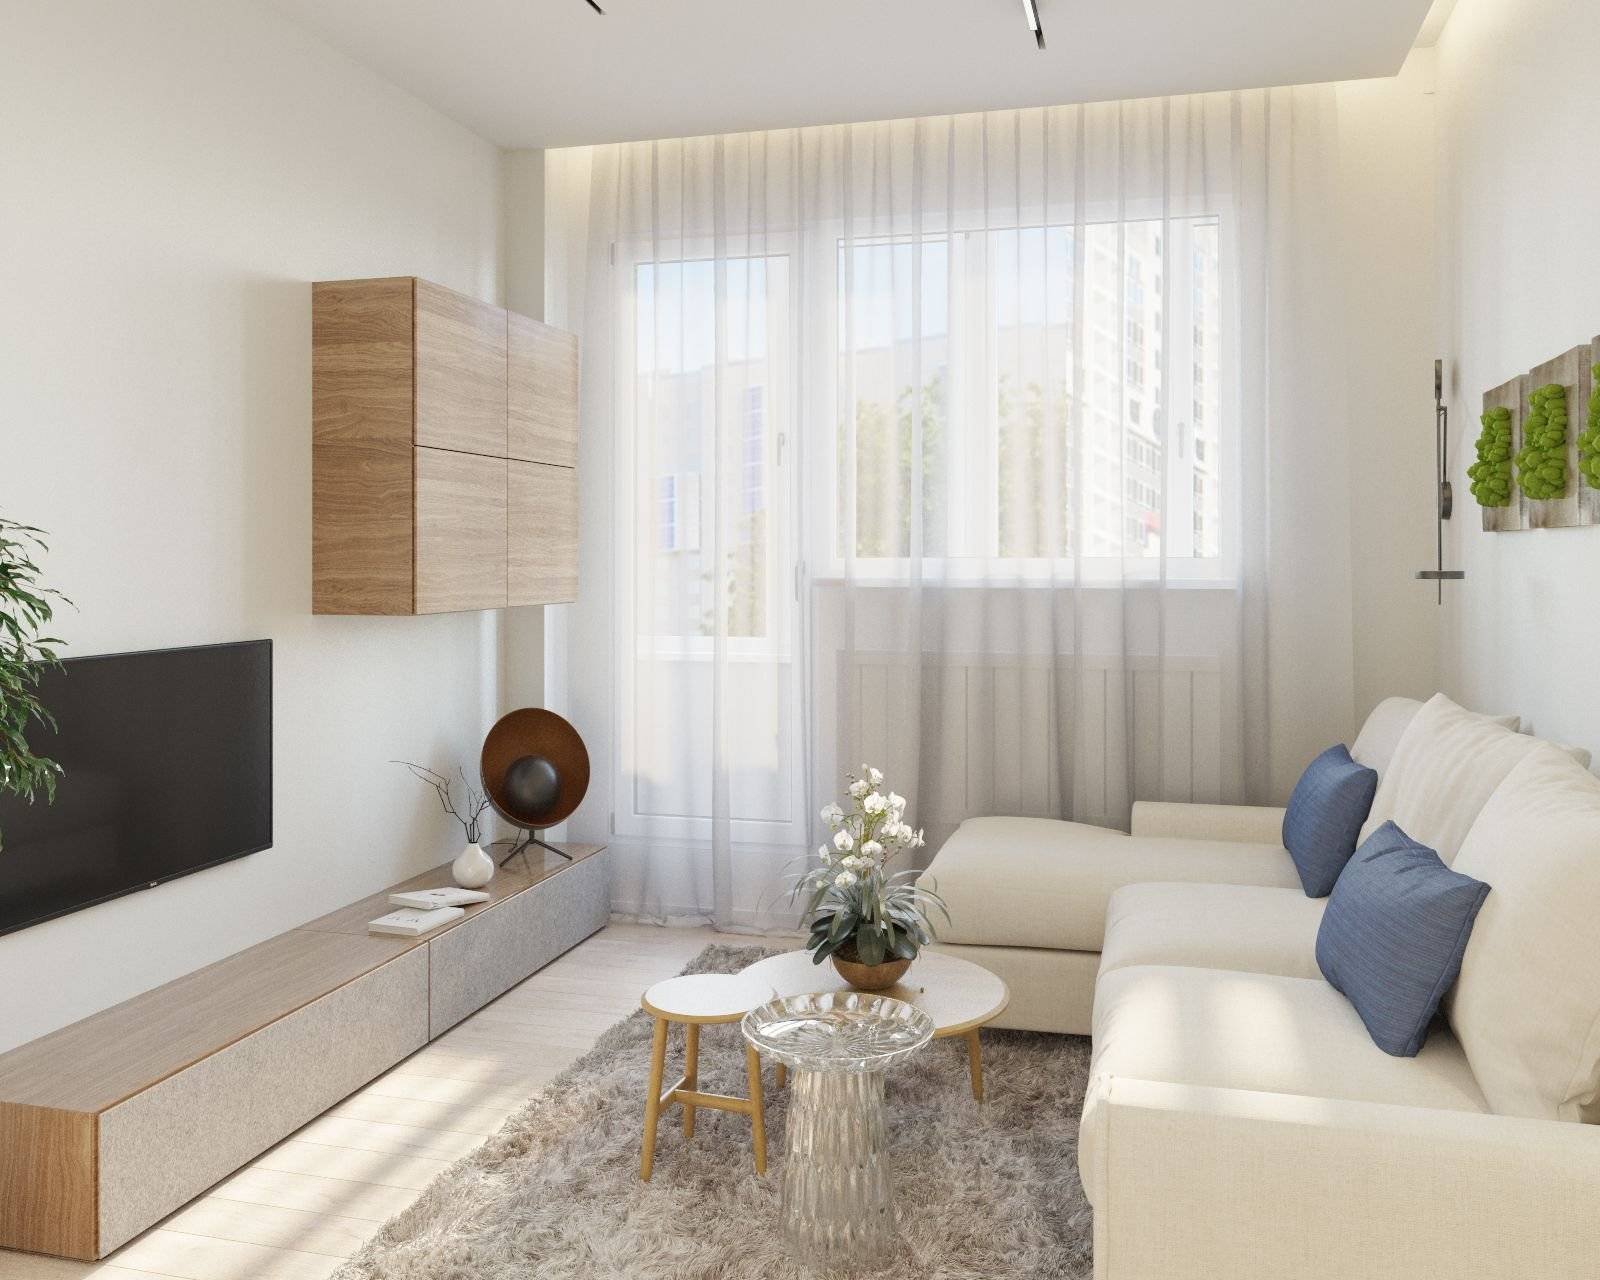 Гостиные 12 кв. м. — 90 фото идей дизайна для маленькой гостиной: планировка, зонирование, выбор мебели, сочетание